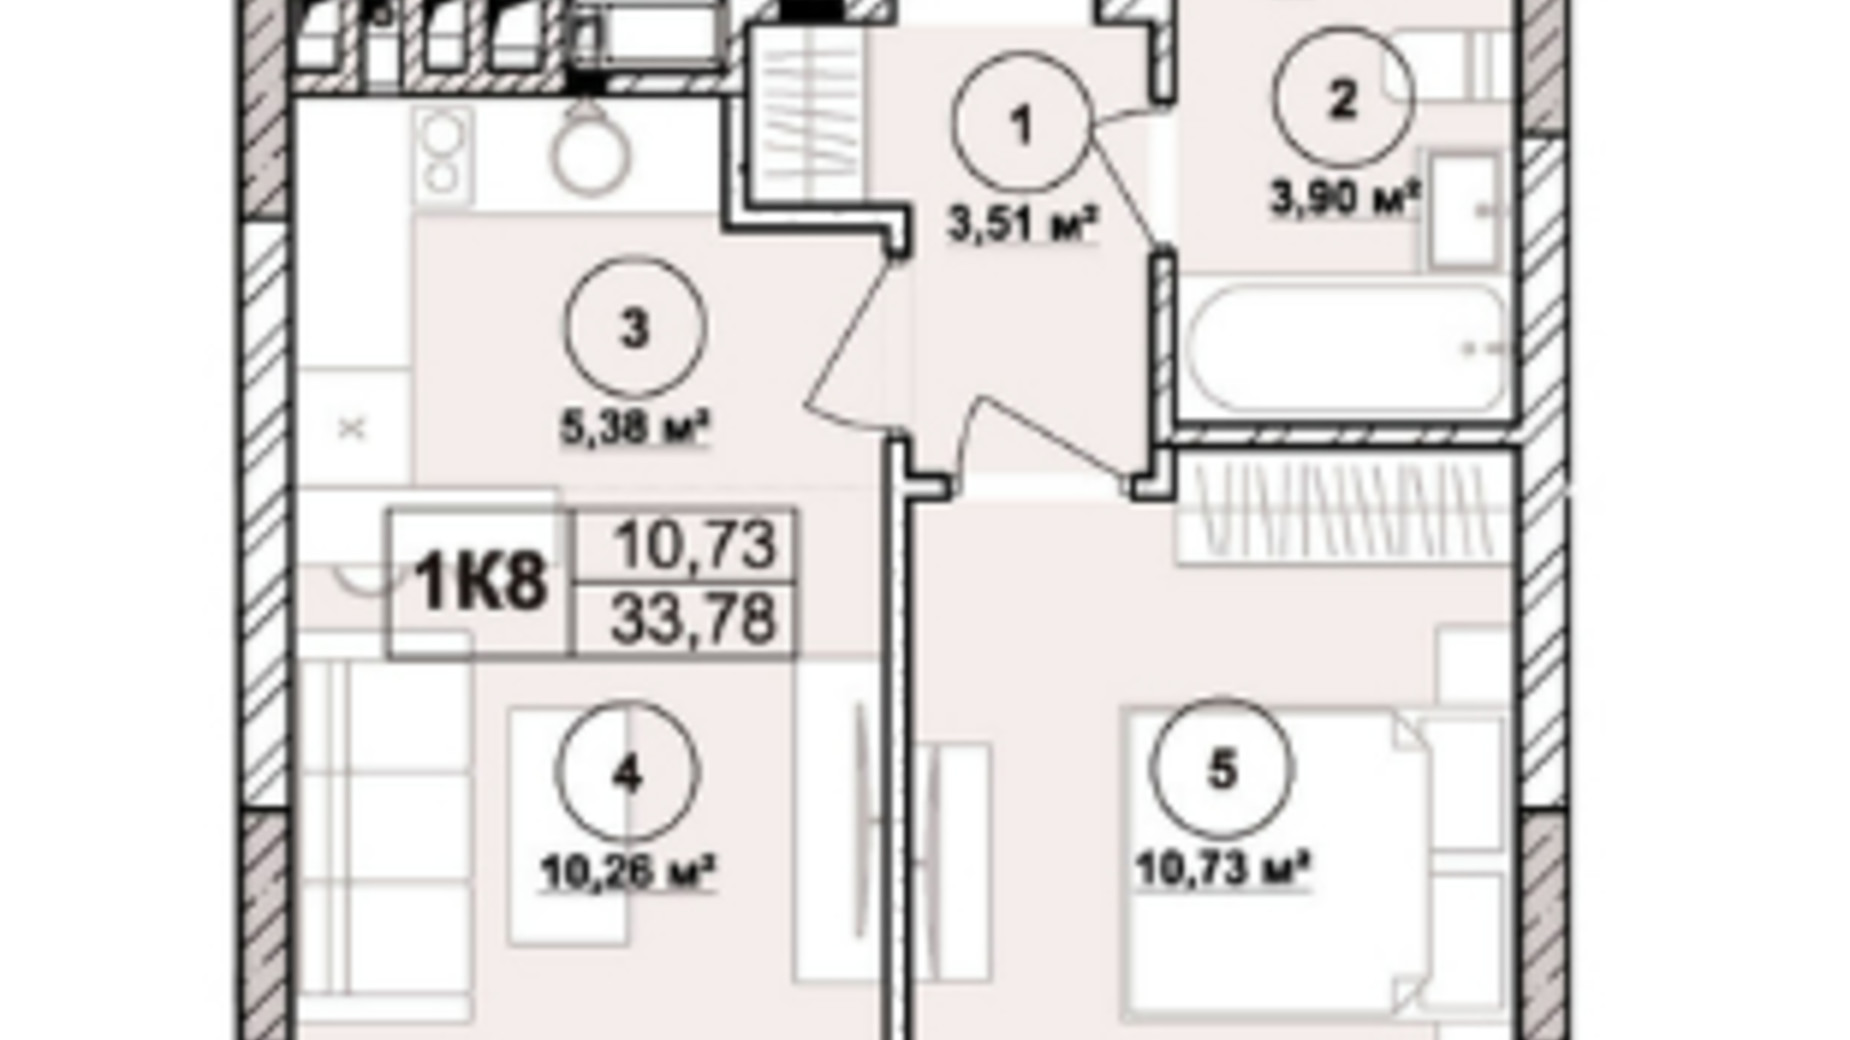 Планировка апартаментов в ЖК Milltown 33.78 м², фото 673237